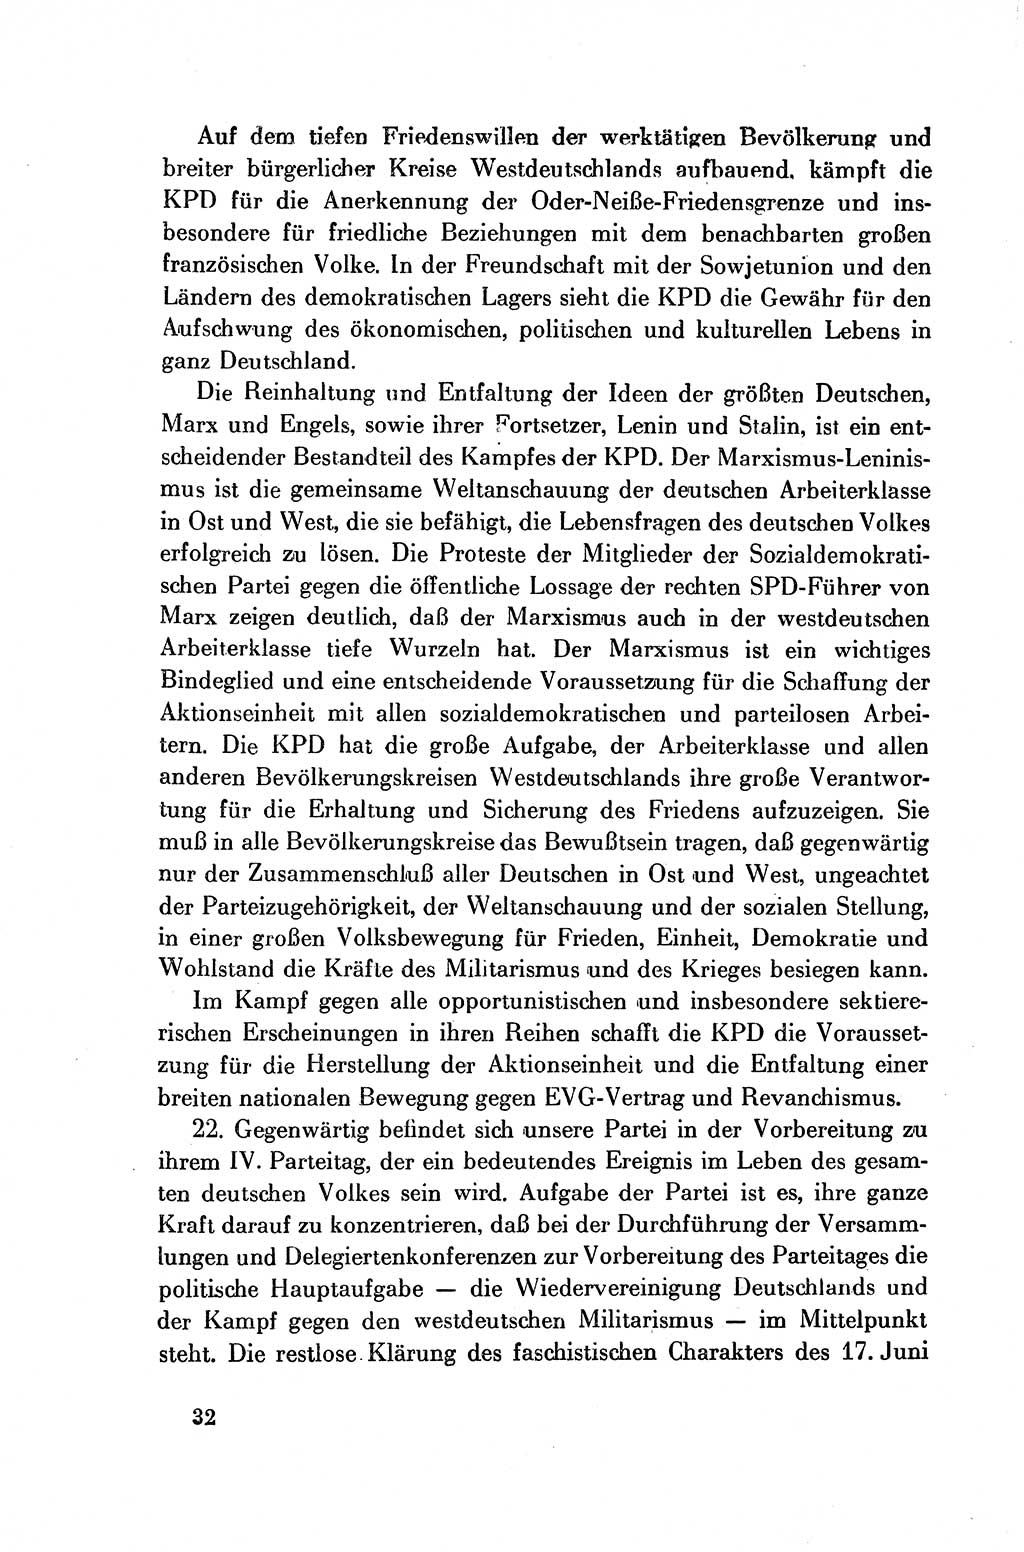 Dokumente der Sozialistischen Einheitspartei Deutschlands (SED) [Deutsche Demokratische Republik (DDR)] 1954-1955, Seite 32 (Dok. SED DDR 1954-1955, S. 32)